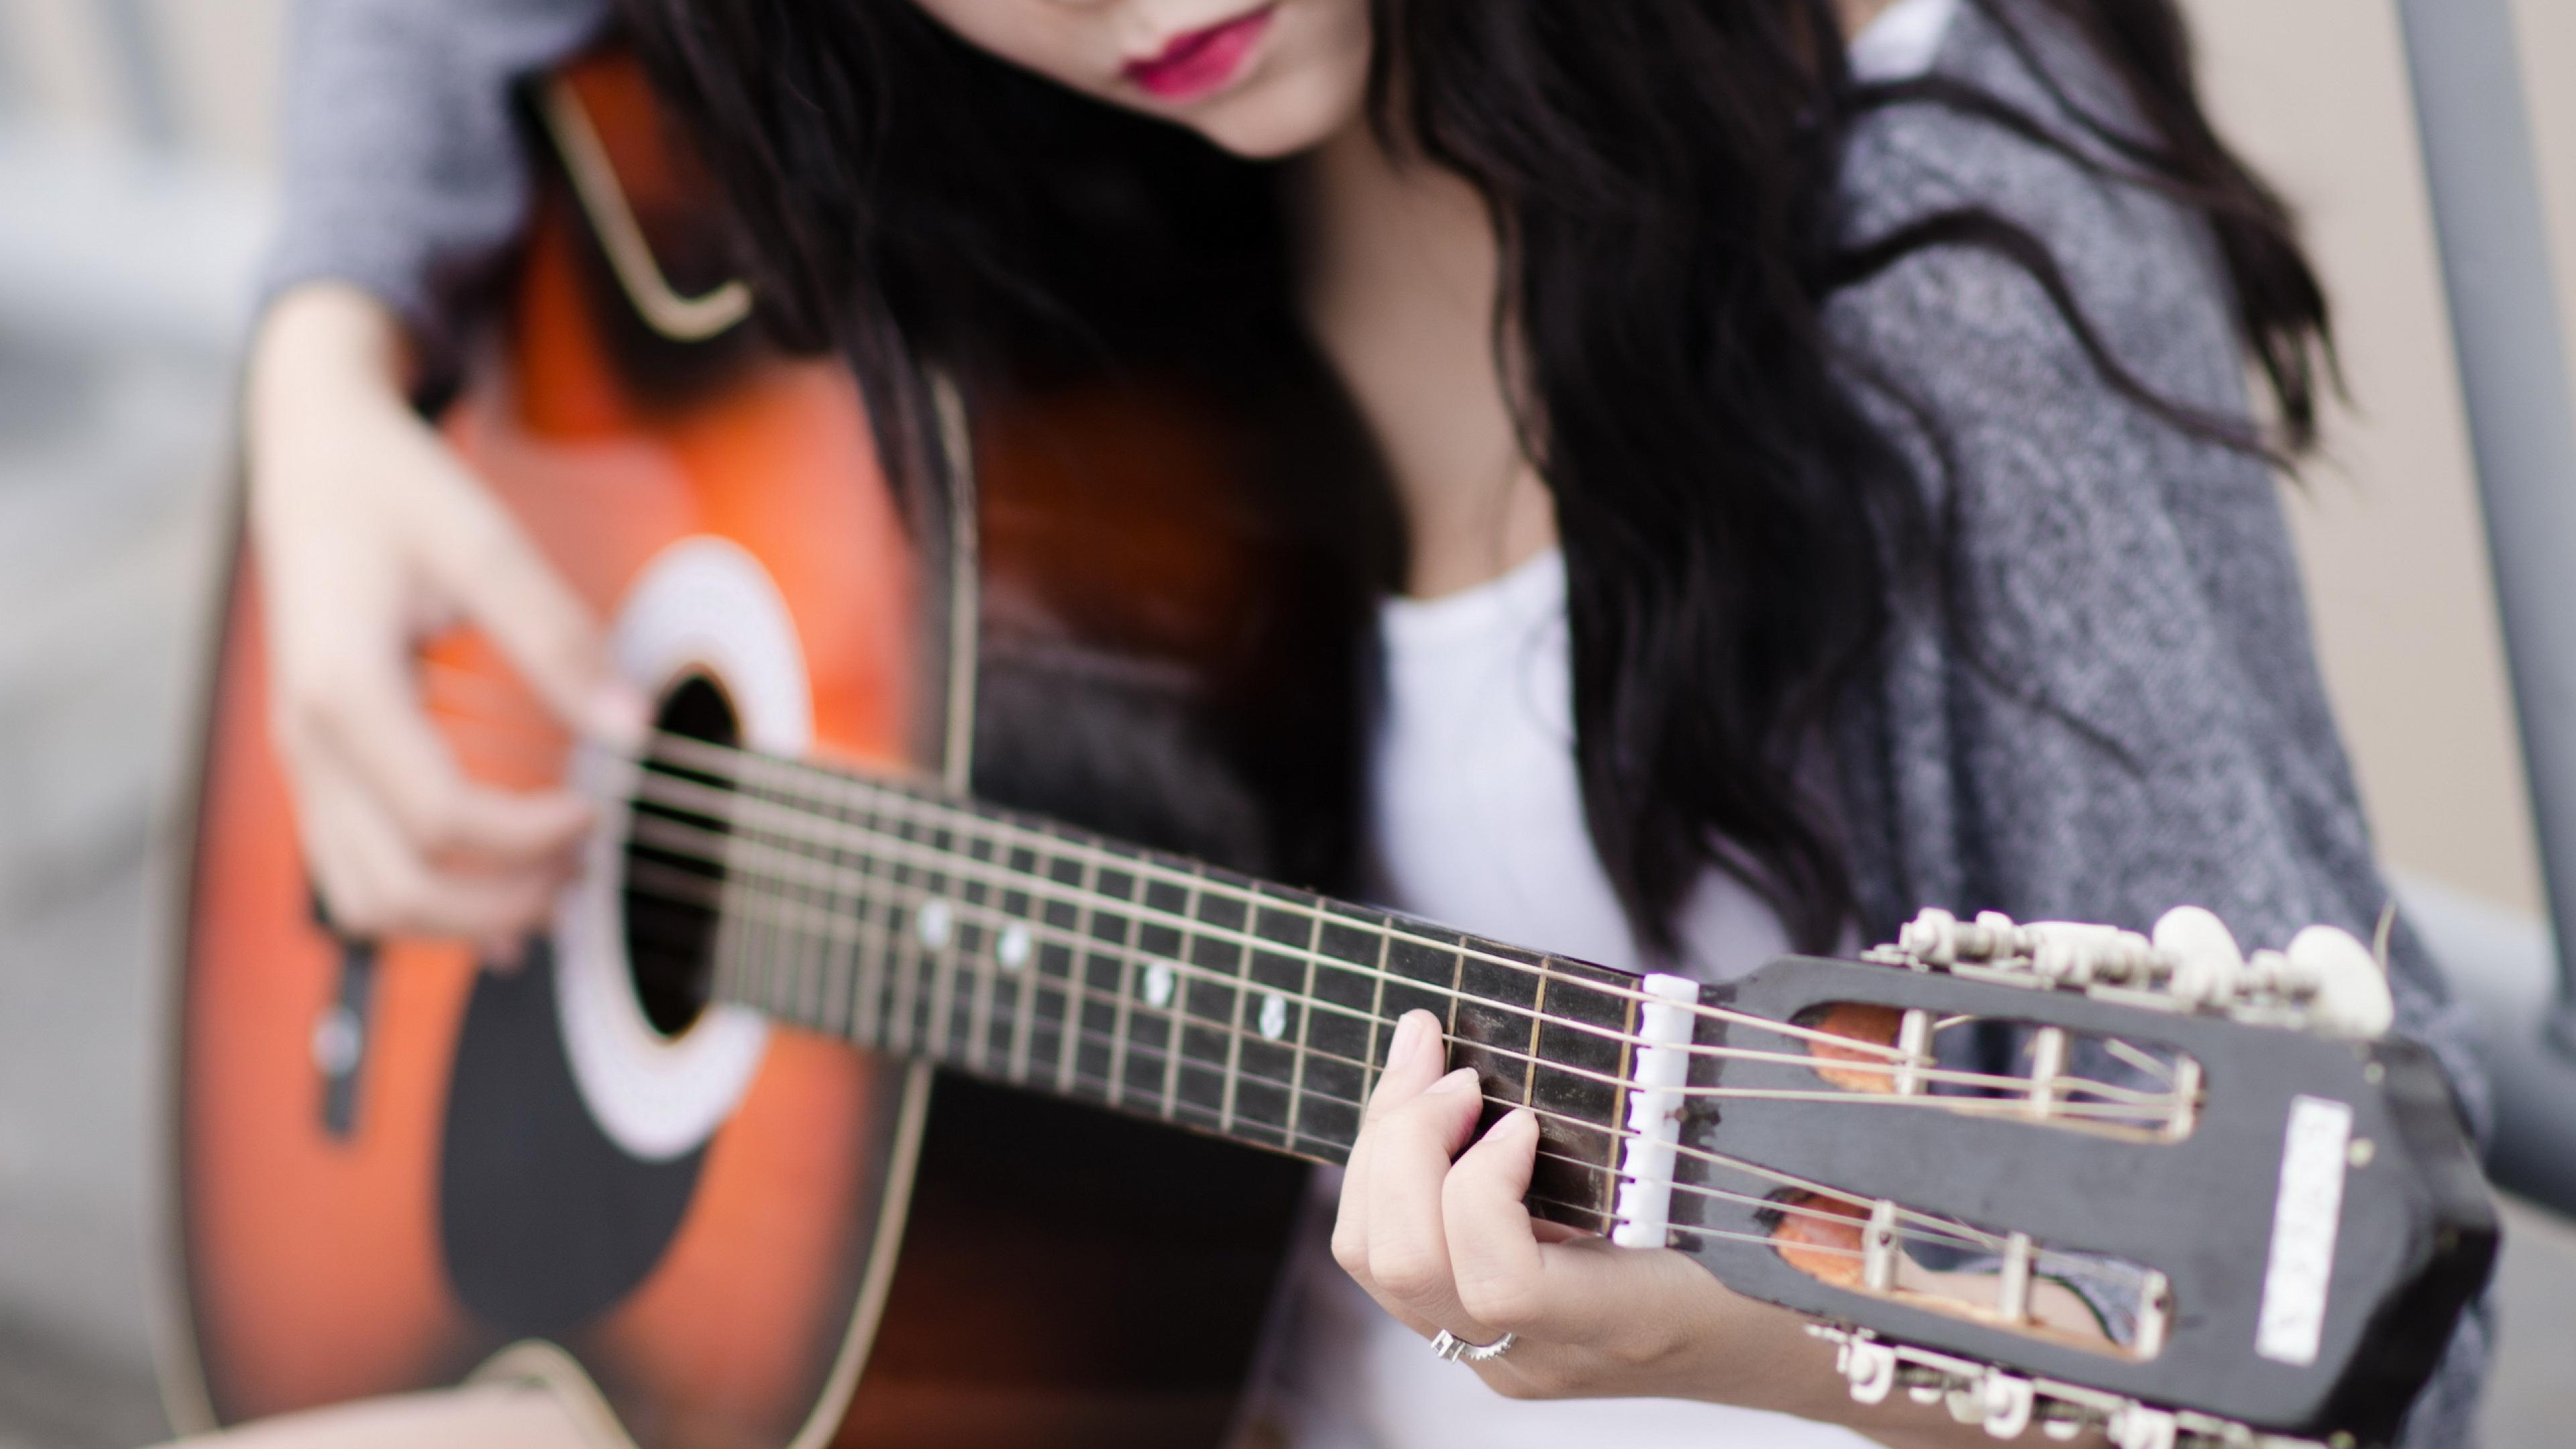 Guitar Wallpaper Hd - Gitar Pic With Girl - HD Wallpaper 